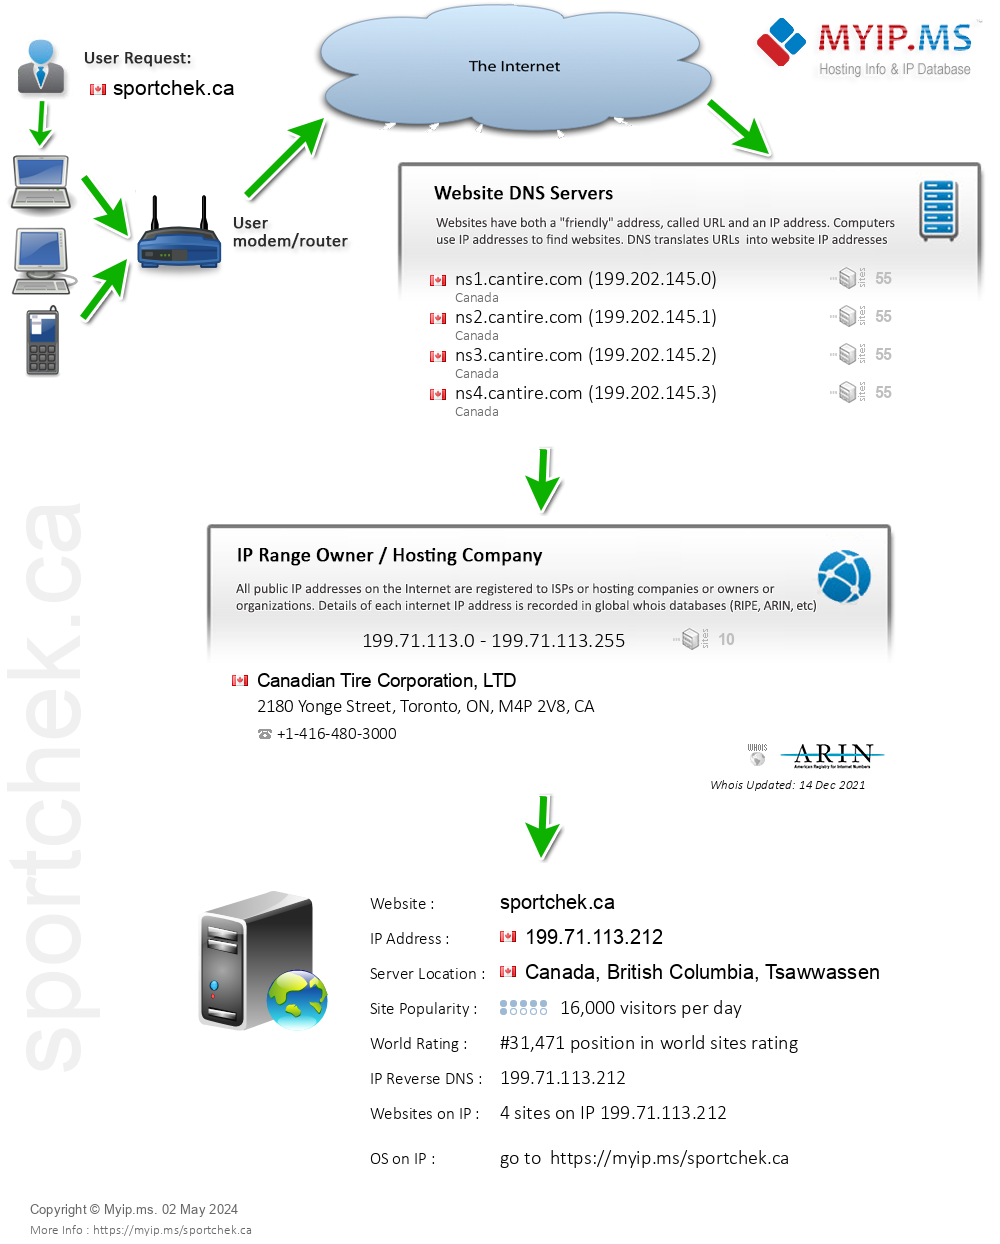 Sportchek.ca - Website Hosting Visual IP Diagram